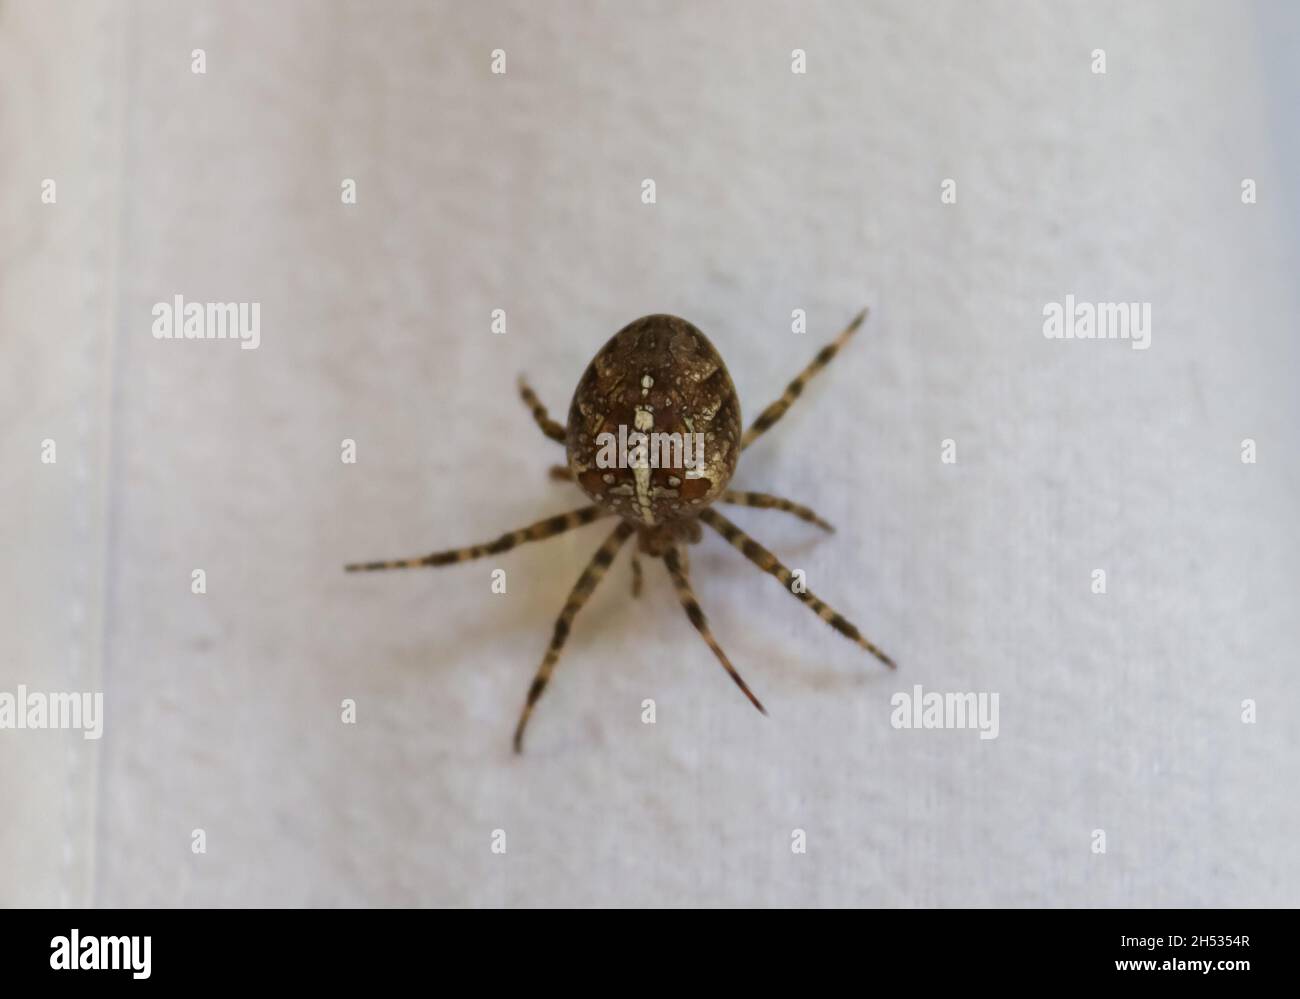 Selektiver Fokus einer großen Spinne, die auf der Kleidung an einer  Wäscheleine läuft Stockfotografie - Alamy